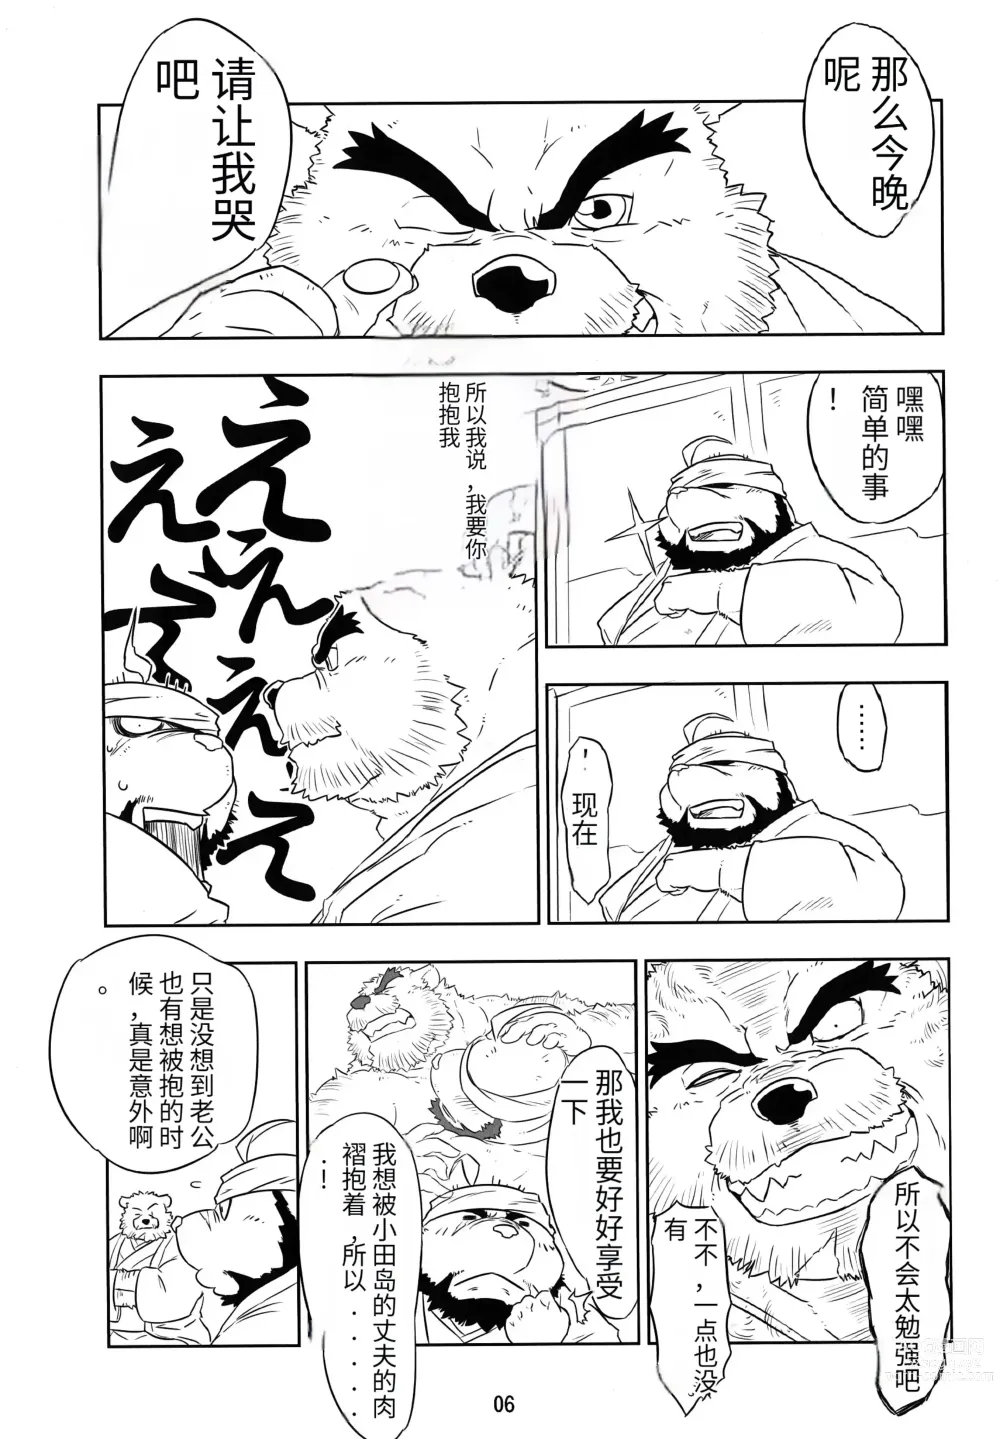 Page 6 of doujinshi Kemono no Roukaku - Utage